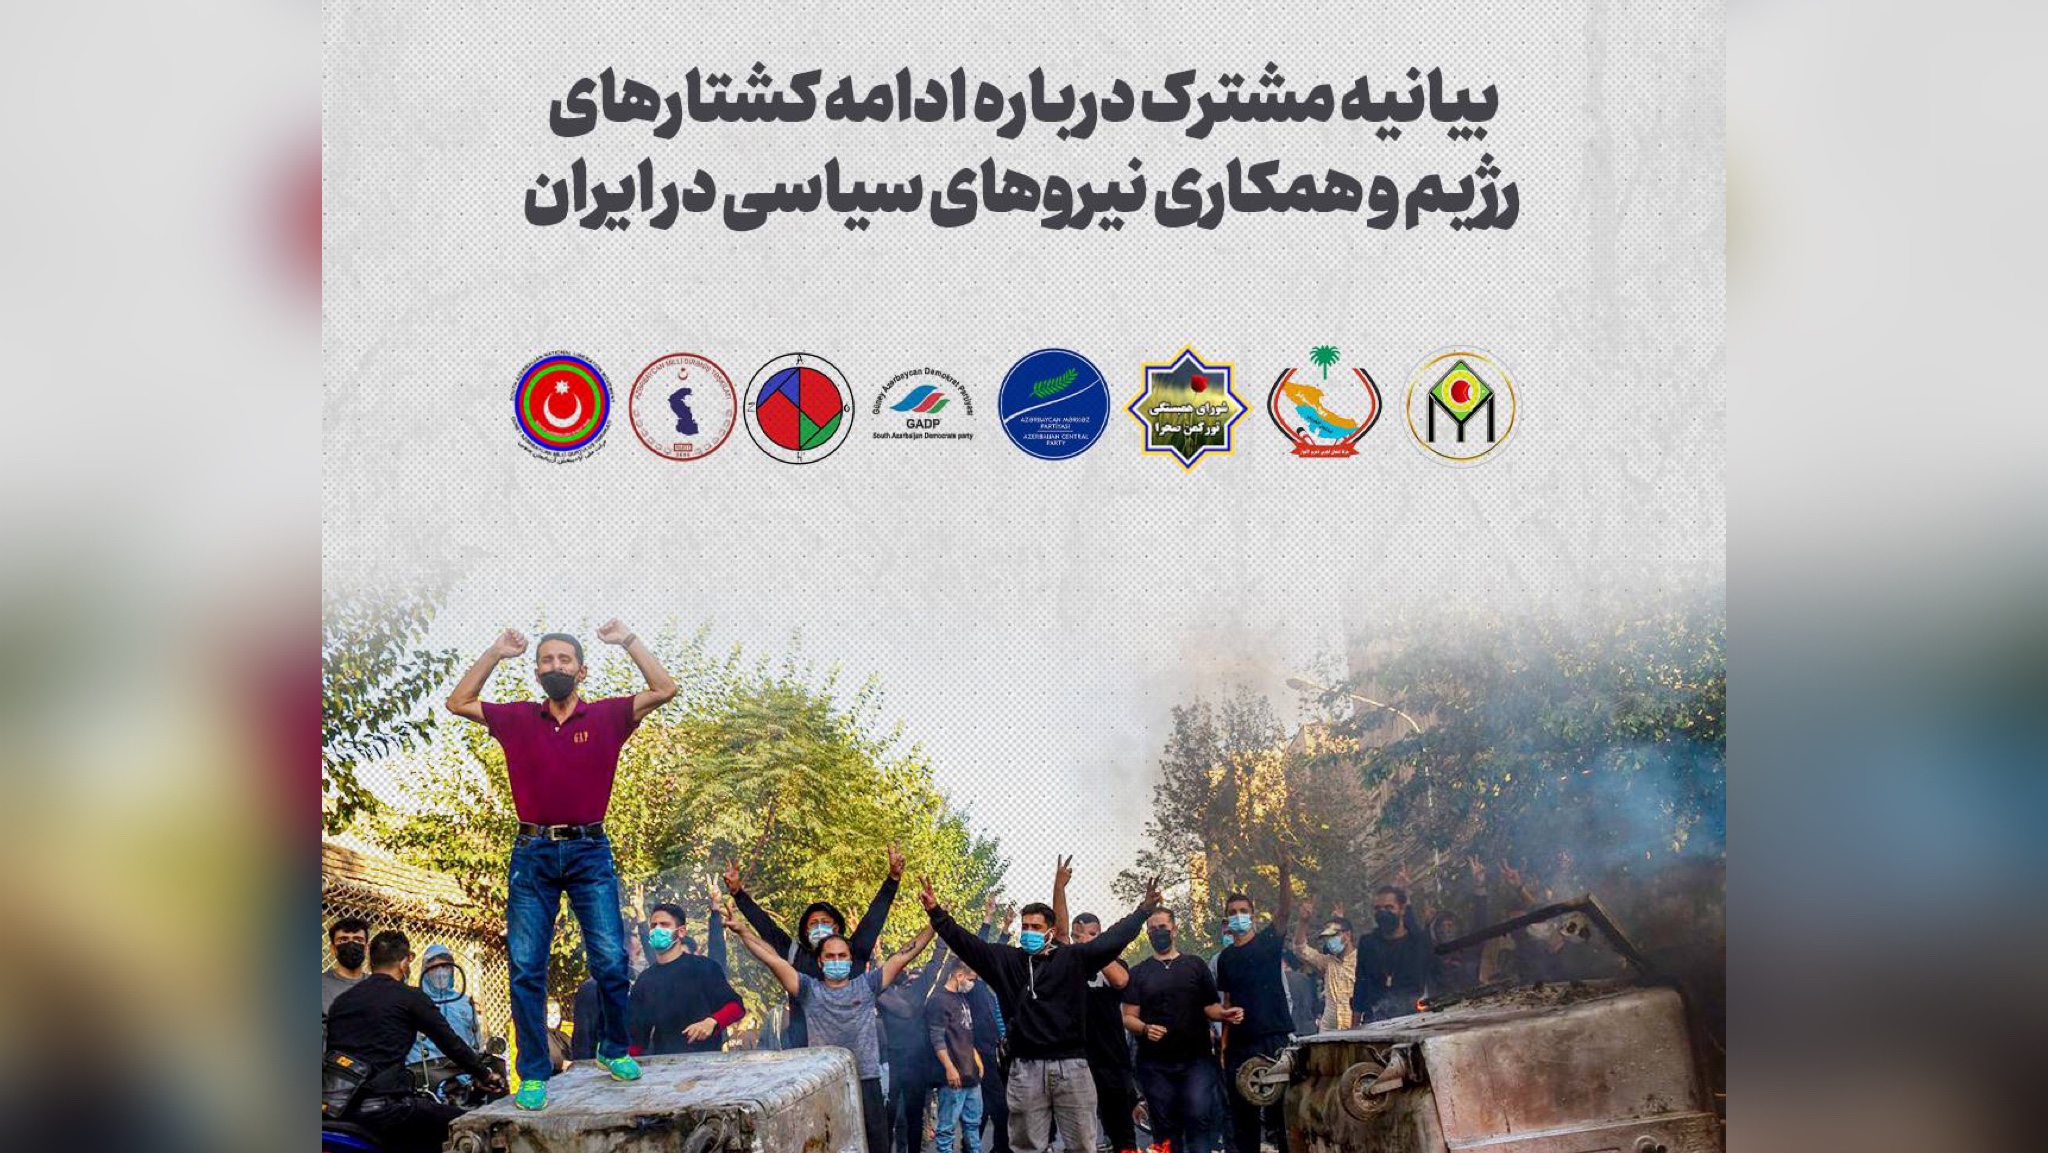 بیانیه مشترک درباره ادامه کشتارهای رژیم و همکاری نیروهای سیاسی در ایران